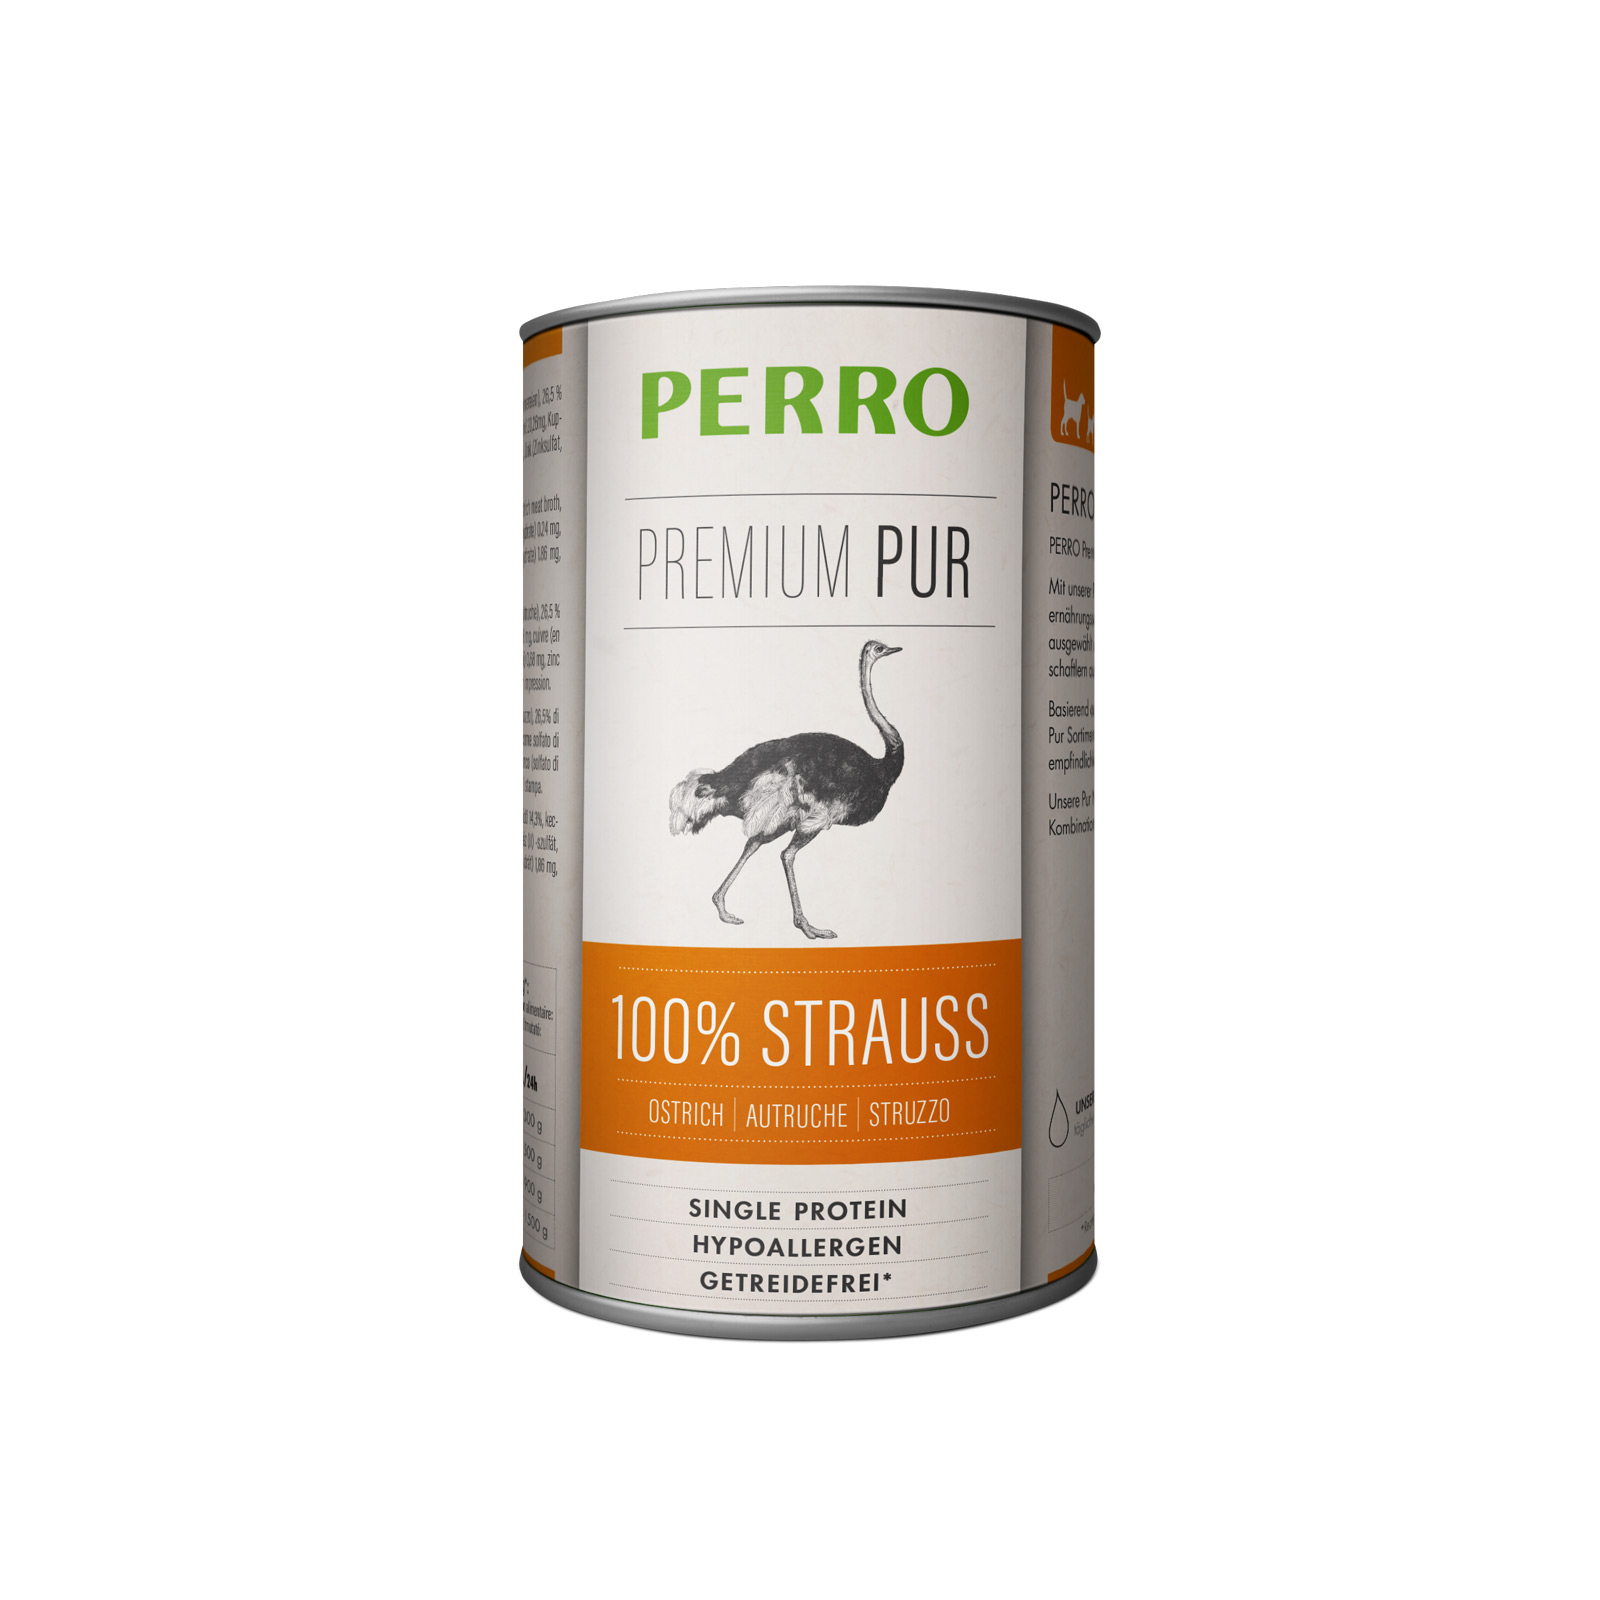 PERRO Premium Pur Strauß